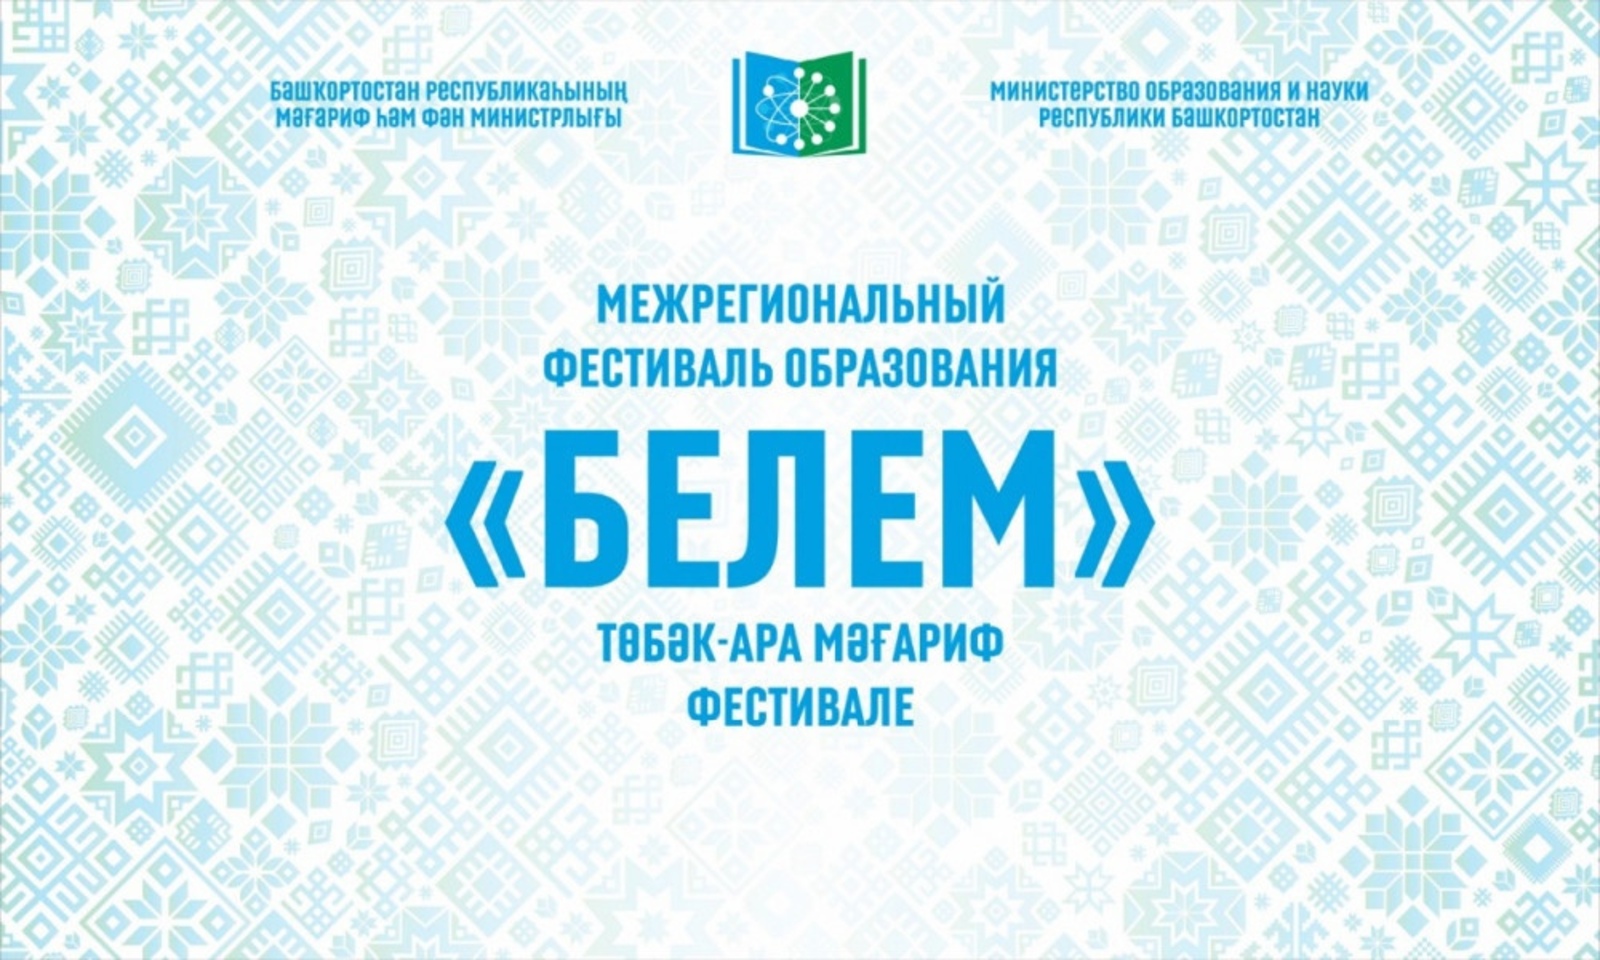 В Башкирии идёт Межрегиональный фестиваль образования «Белем»